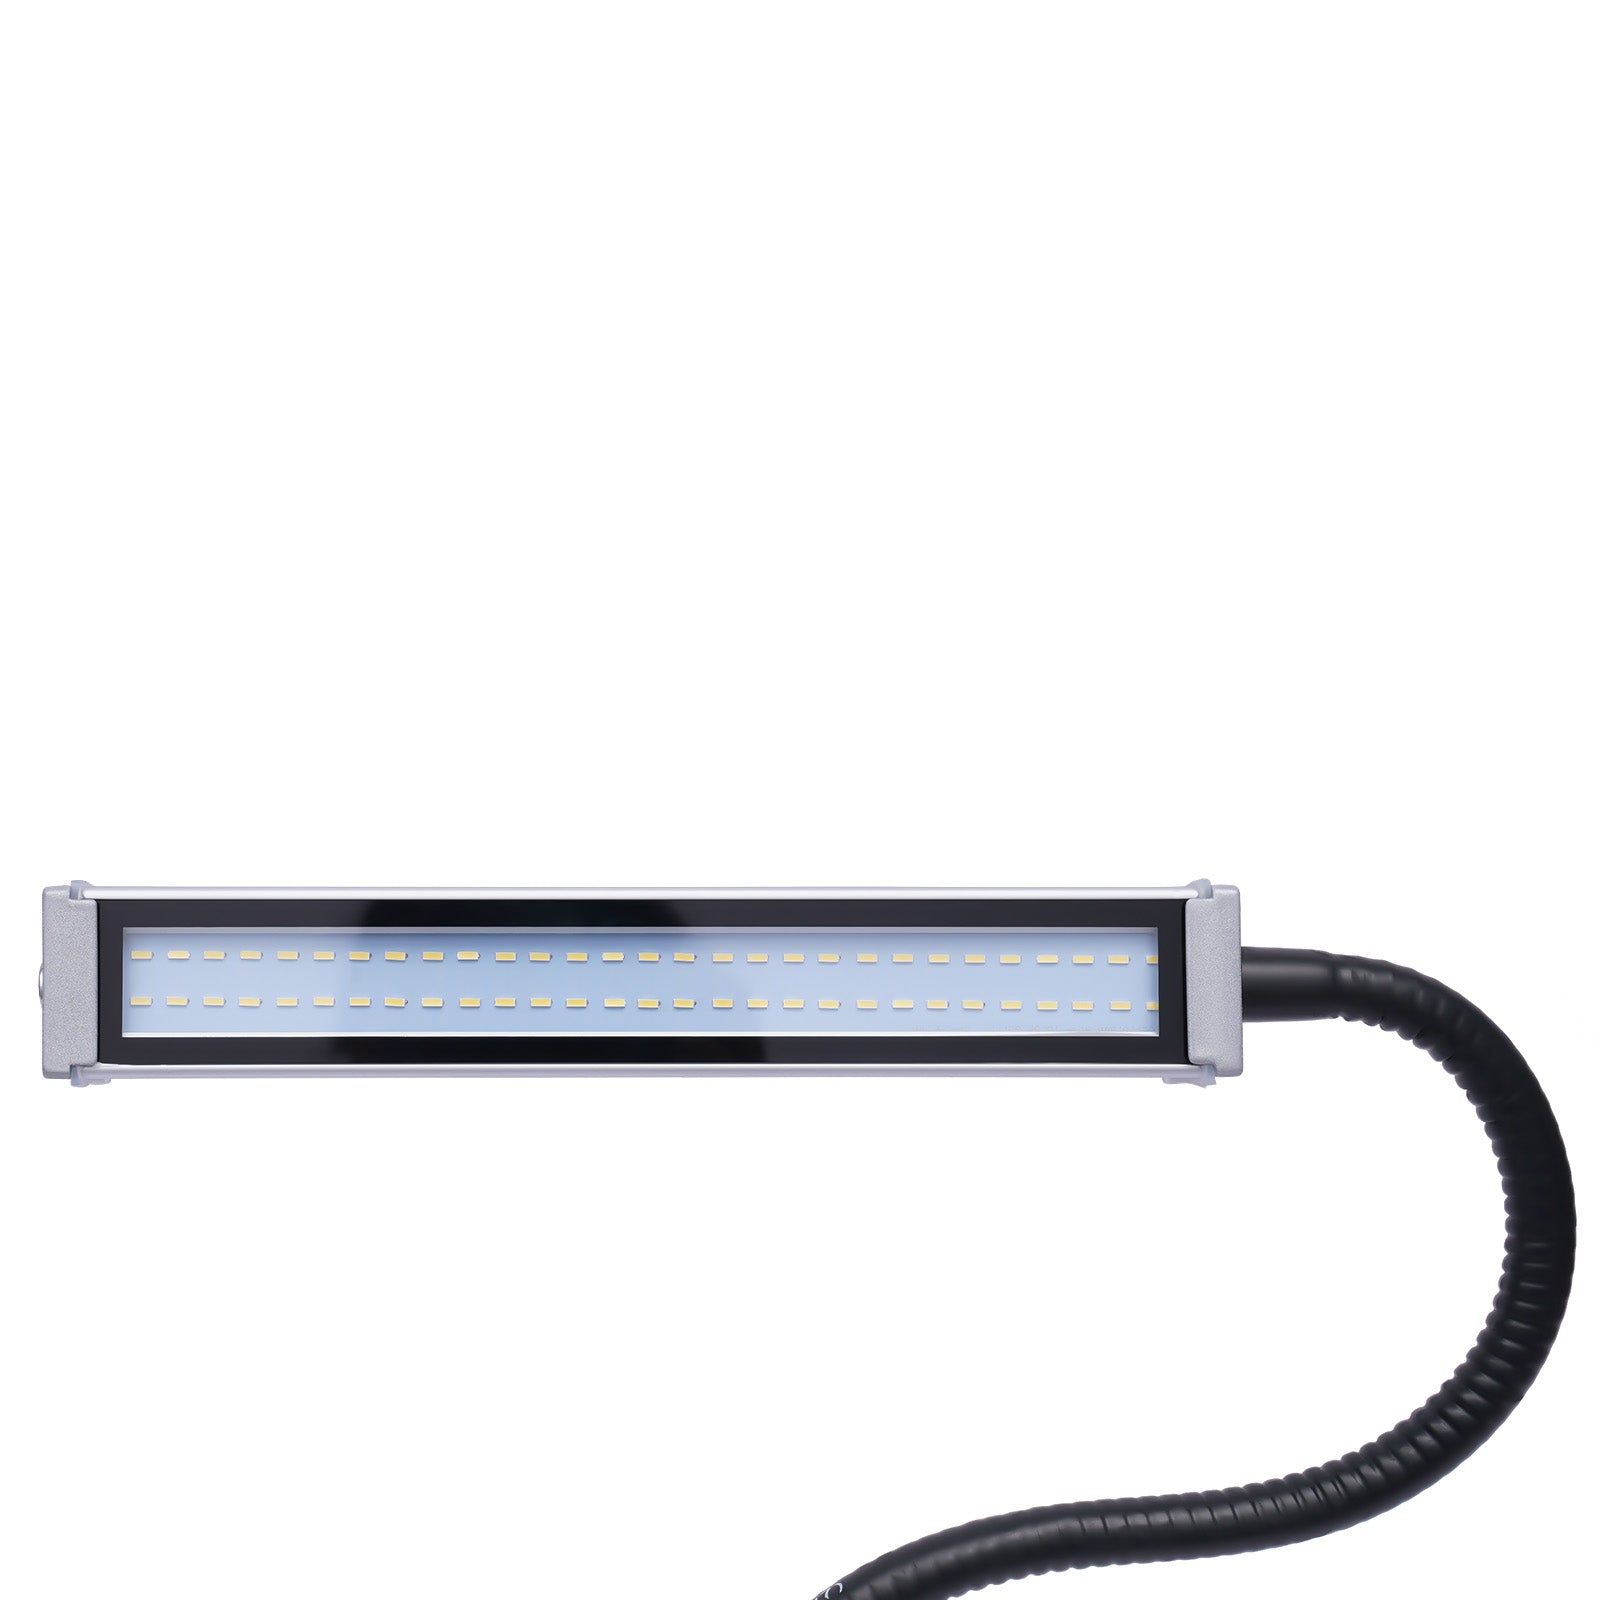 Luce magnetica, lampada da lavoro a LED a collo di cigno, 60 LED IP67, illuminazione industriale per machine utensili